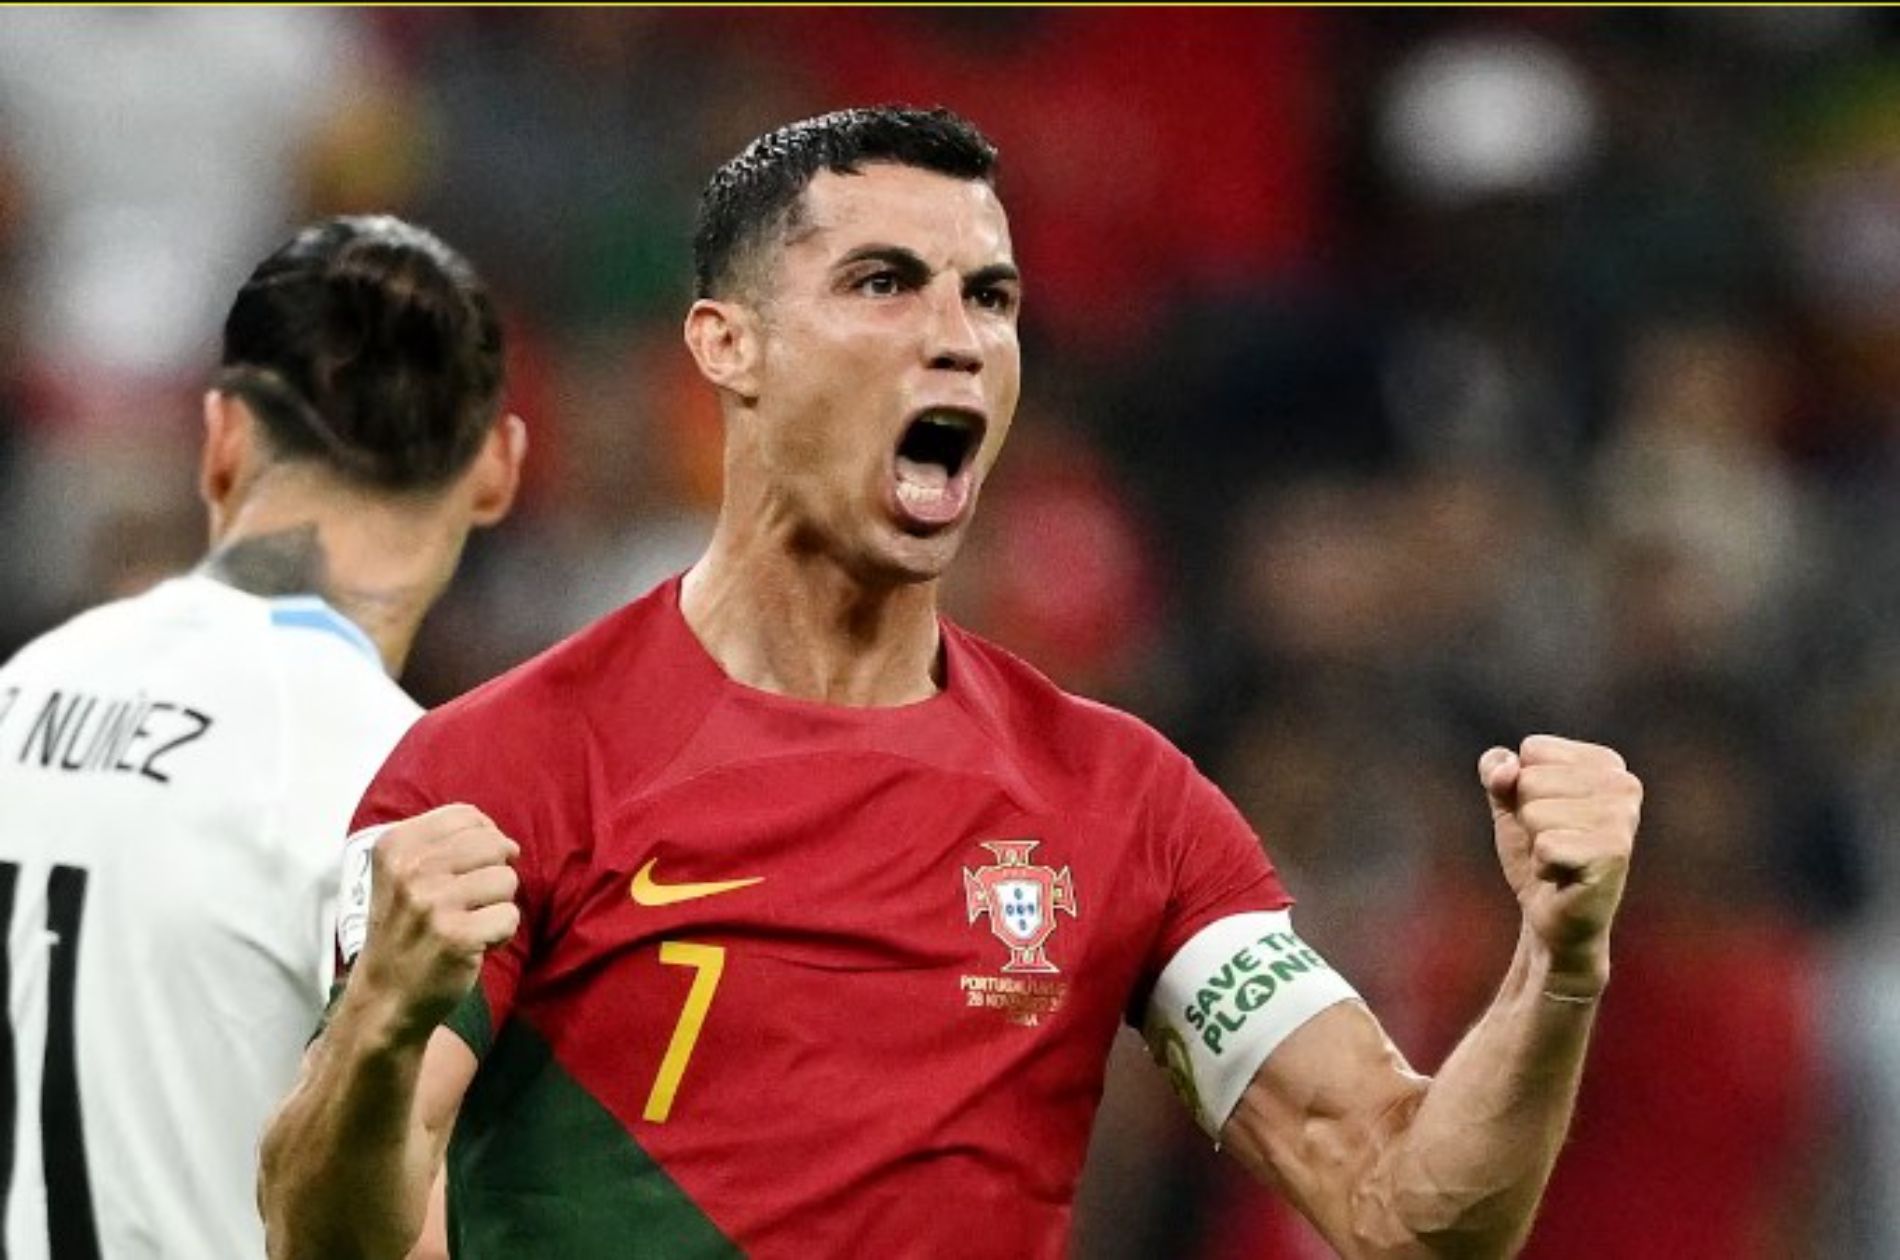 Laga pembuka Euro 2024 antara Portugal dan Ceko. Mampukah Portugal memulai turnamen dengan kemenangan? #Euro2024 #PortugalVsCeko